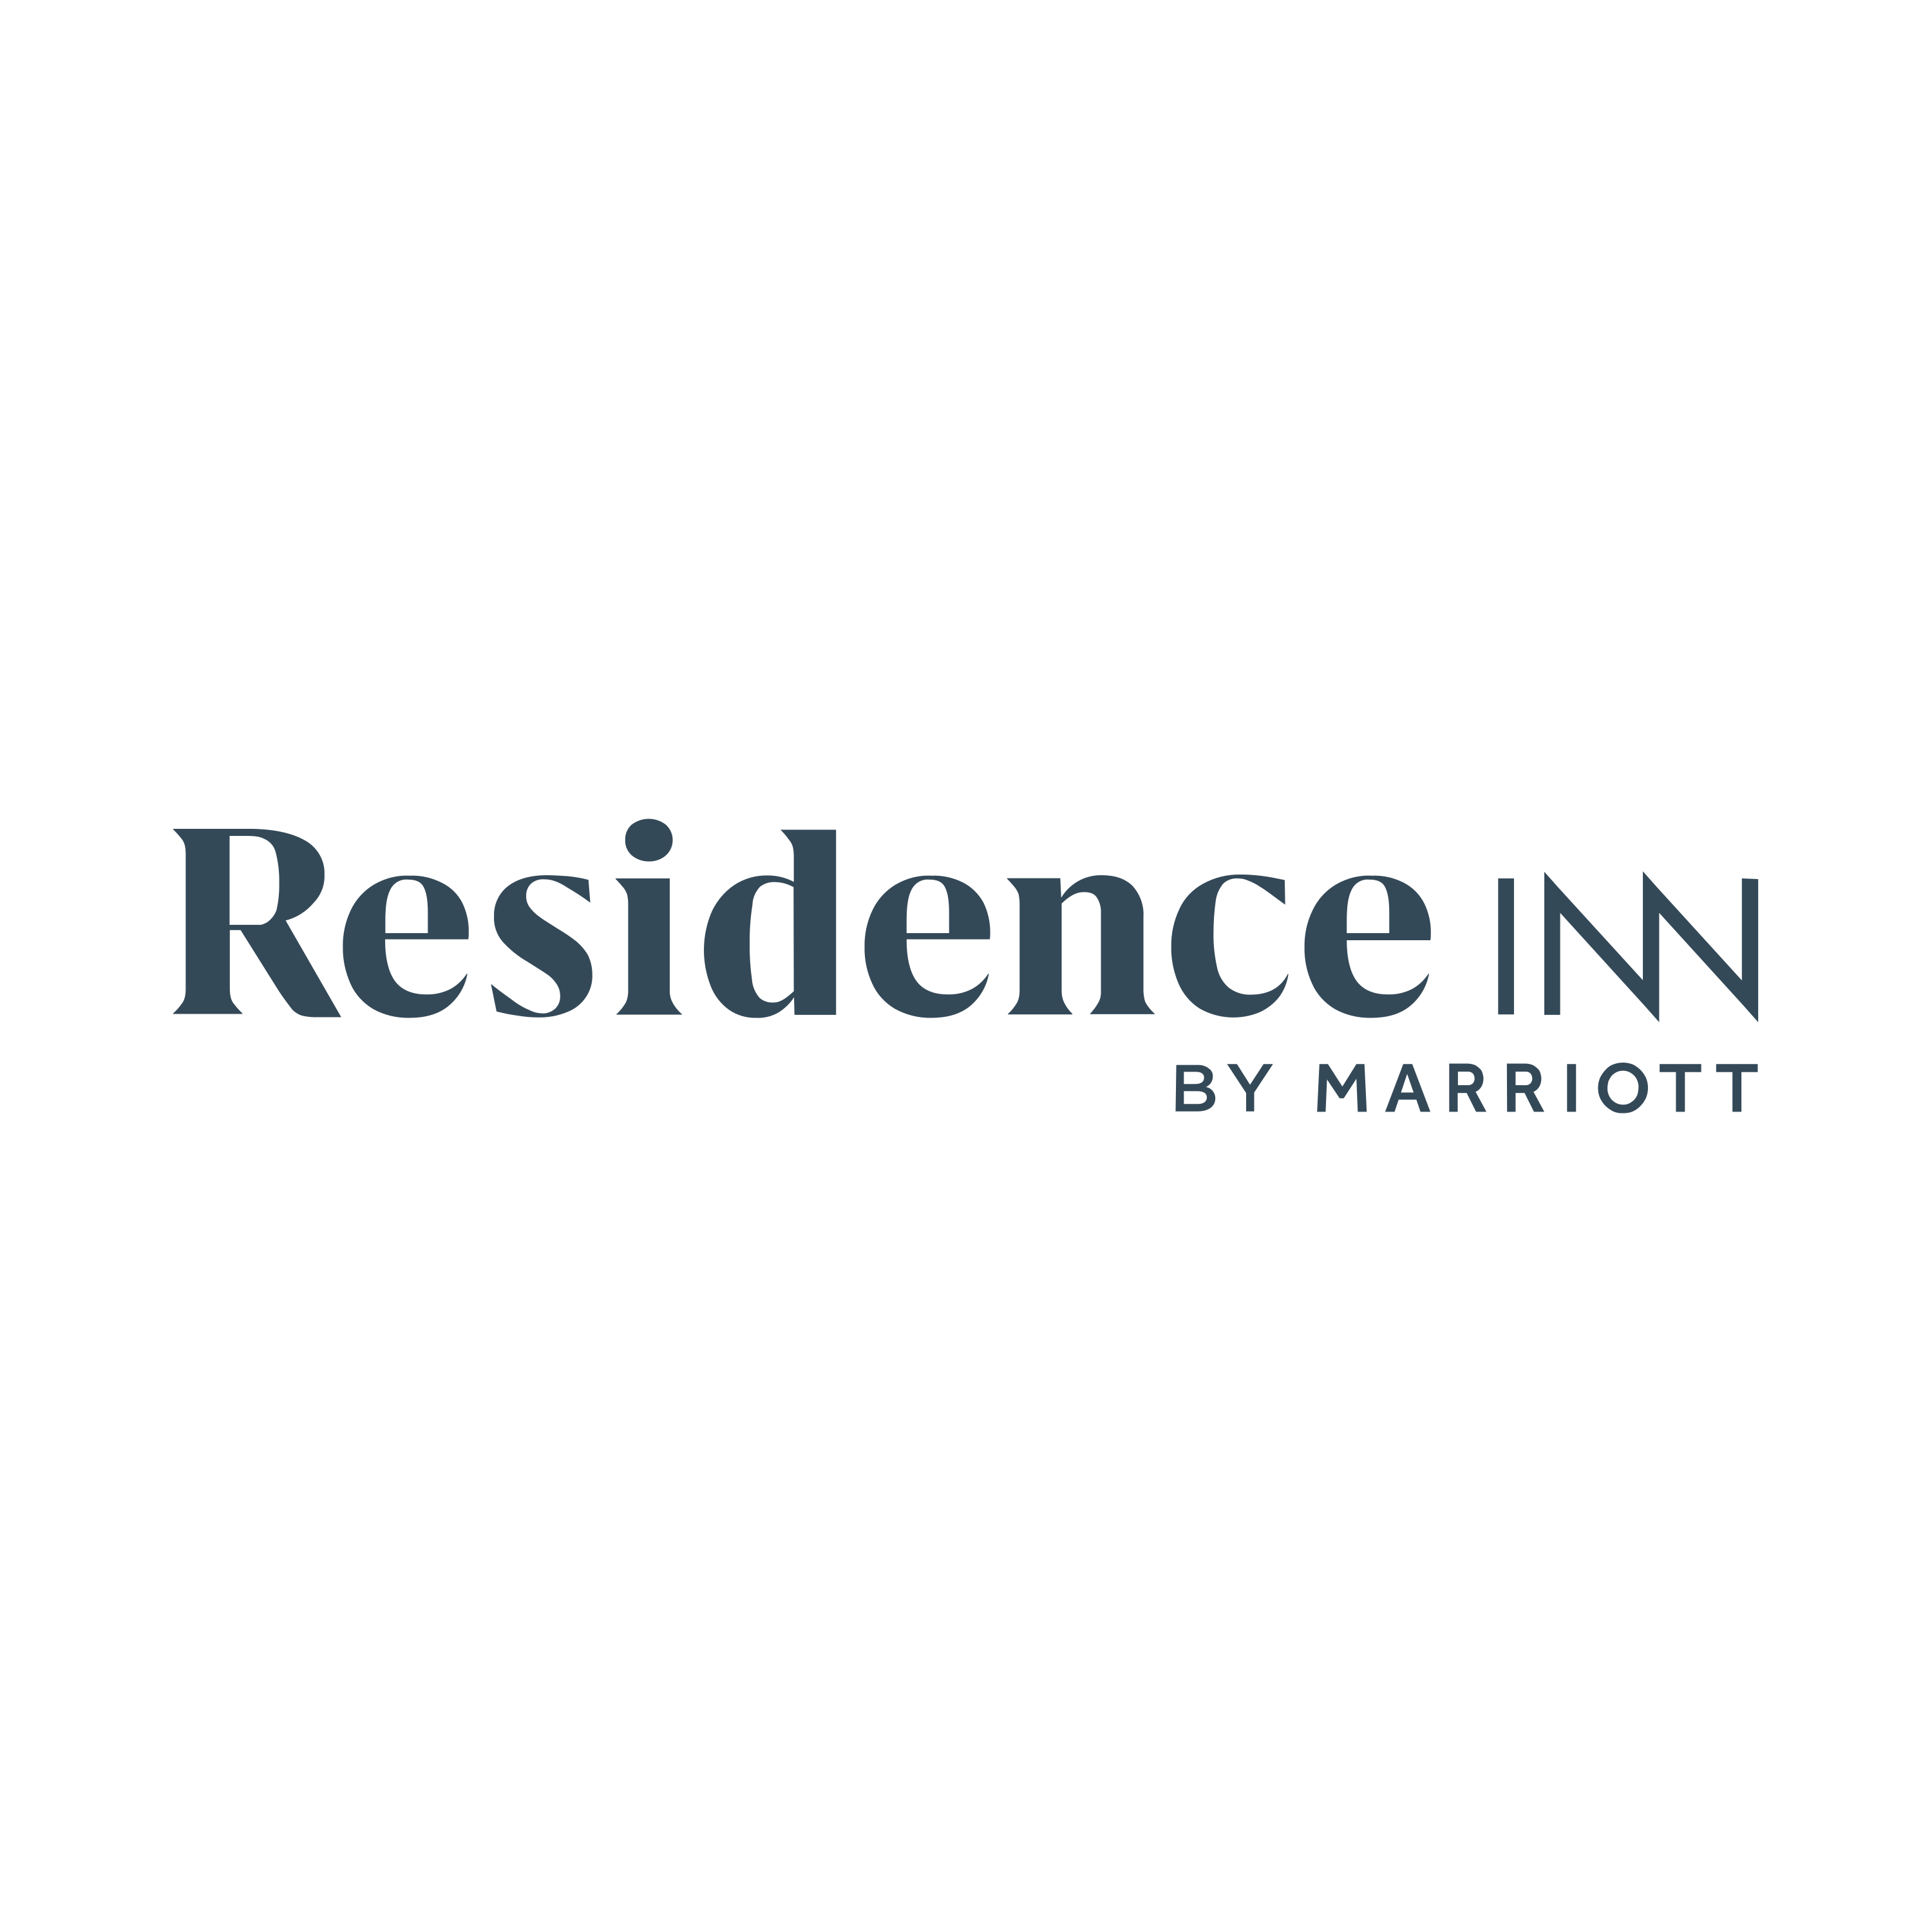 Residence Inn Logo  Transparent Photo